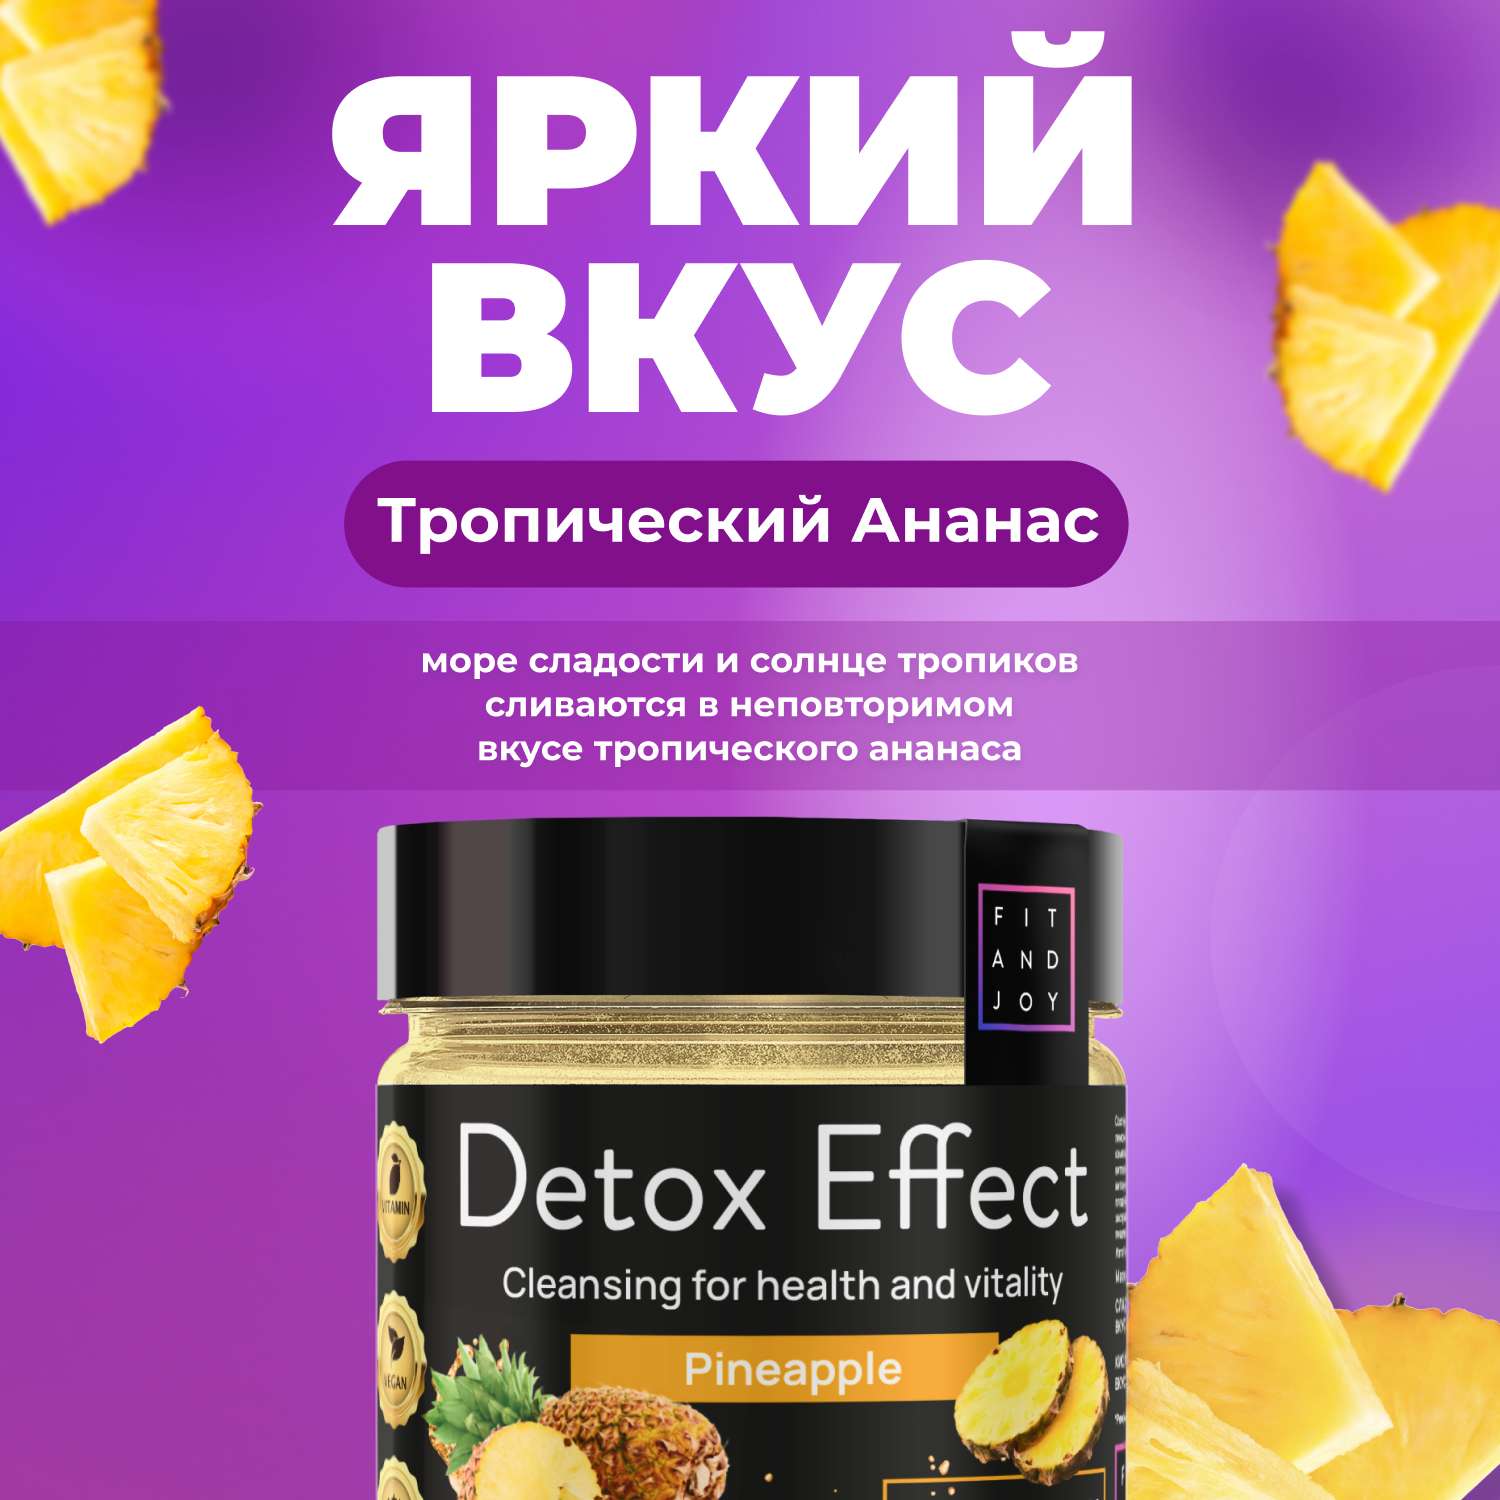 Сухая смесь FIT AND JOY Detox Effect Ананас - фото 2